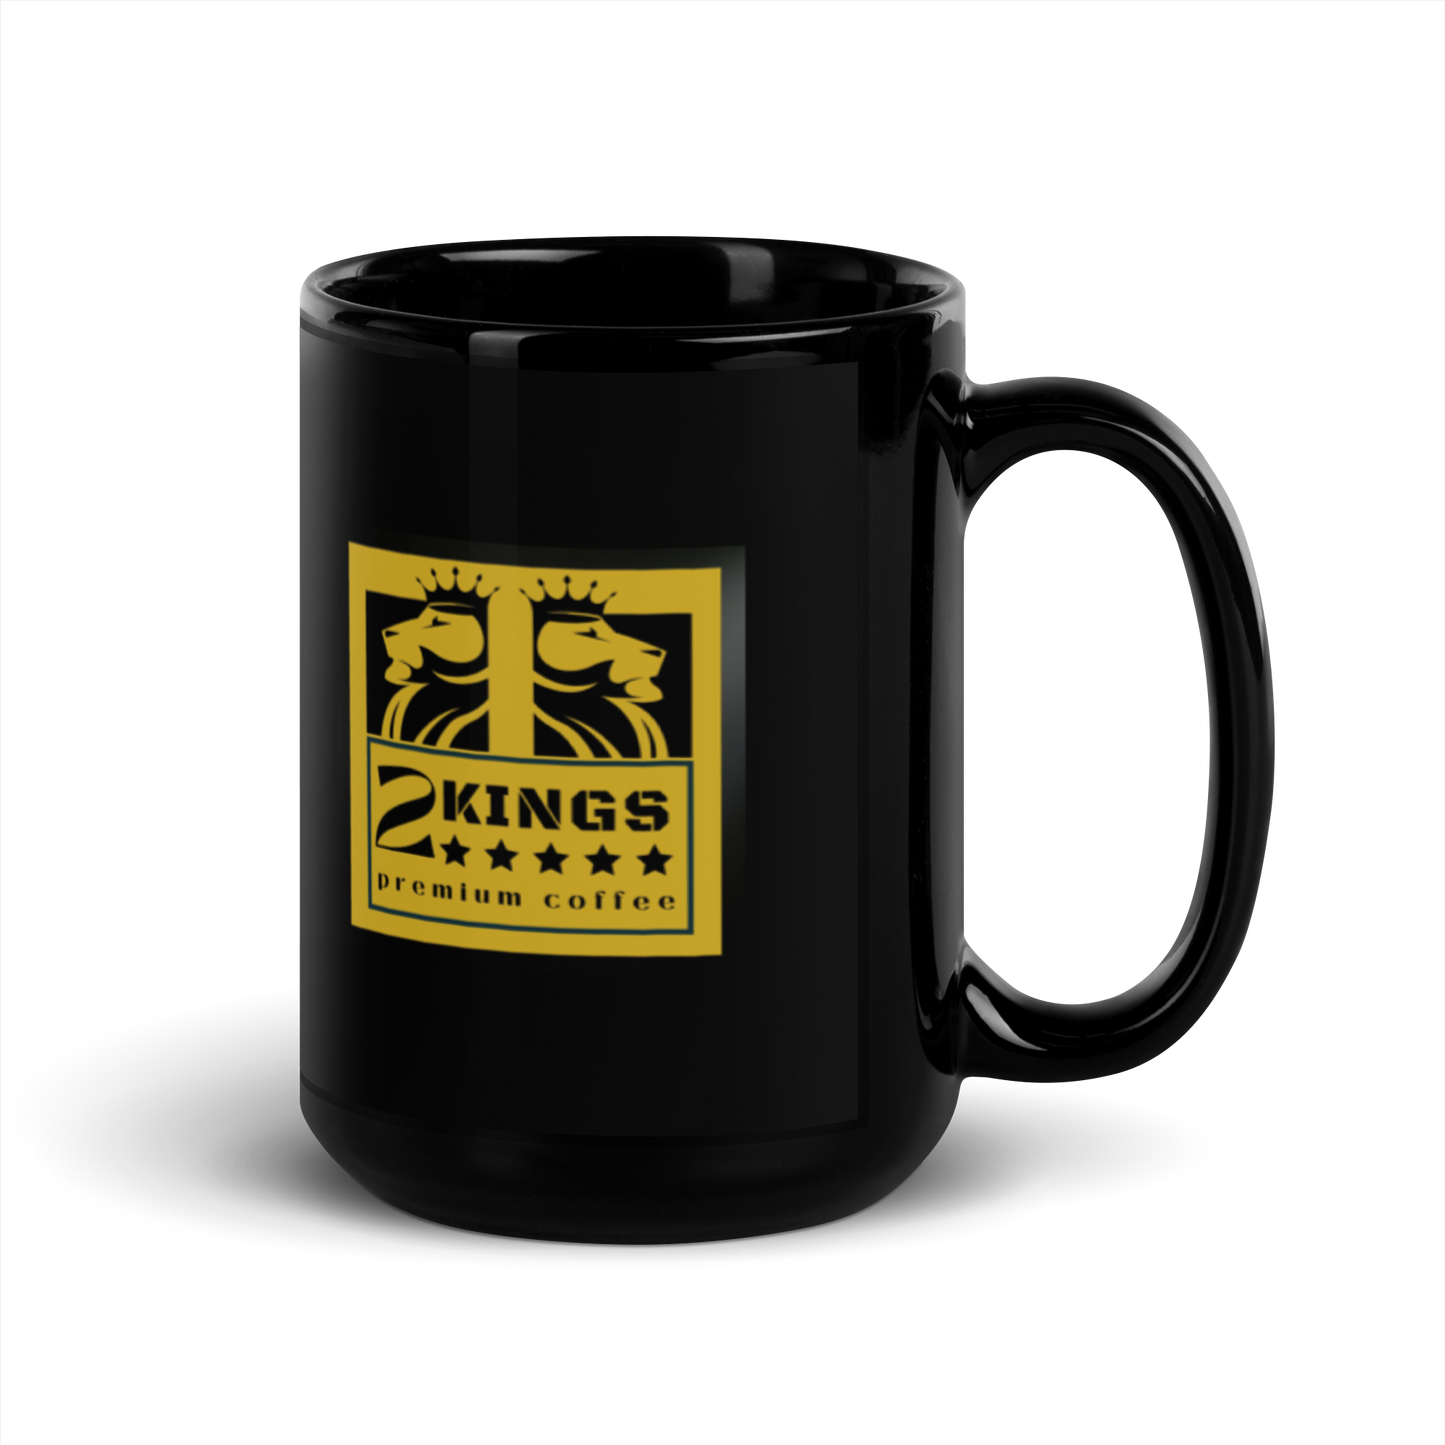 2 Kings Coffee - Black Glossy Mug